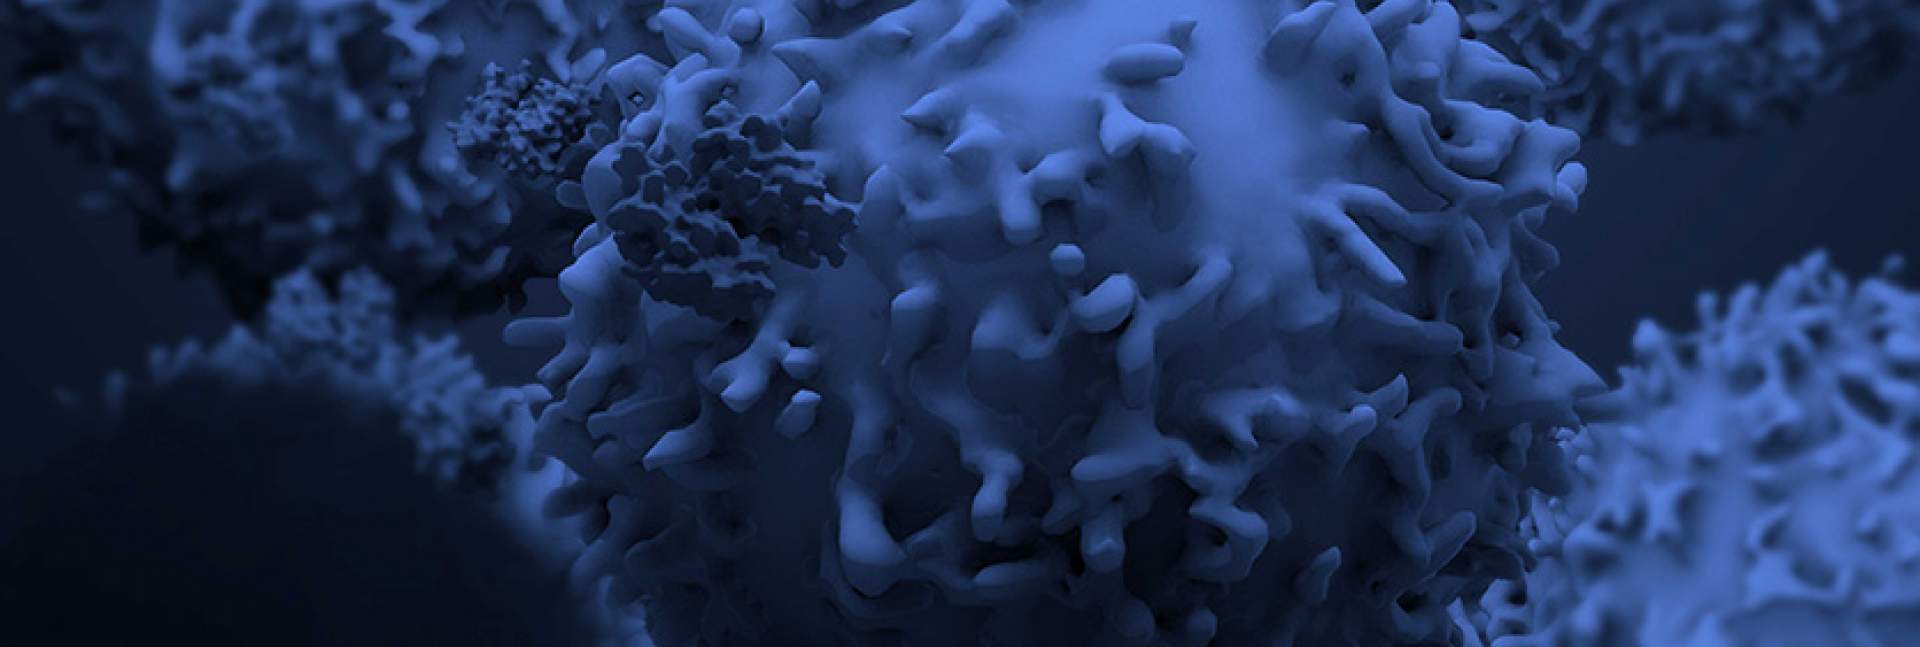 תאי T של המערכת החיסונית. טיפולים אימונותרפיים רותמים תאים אלה נגד גידולים סרטניים. תמונה: גטי אימג'ס